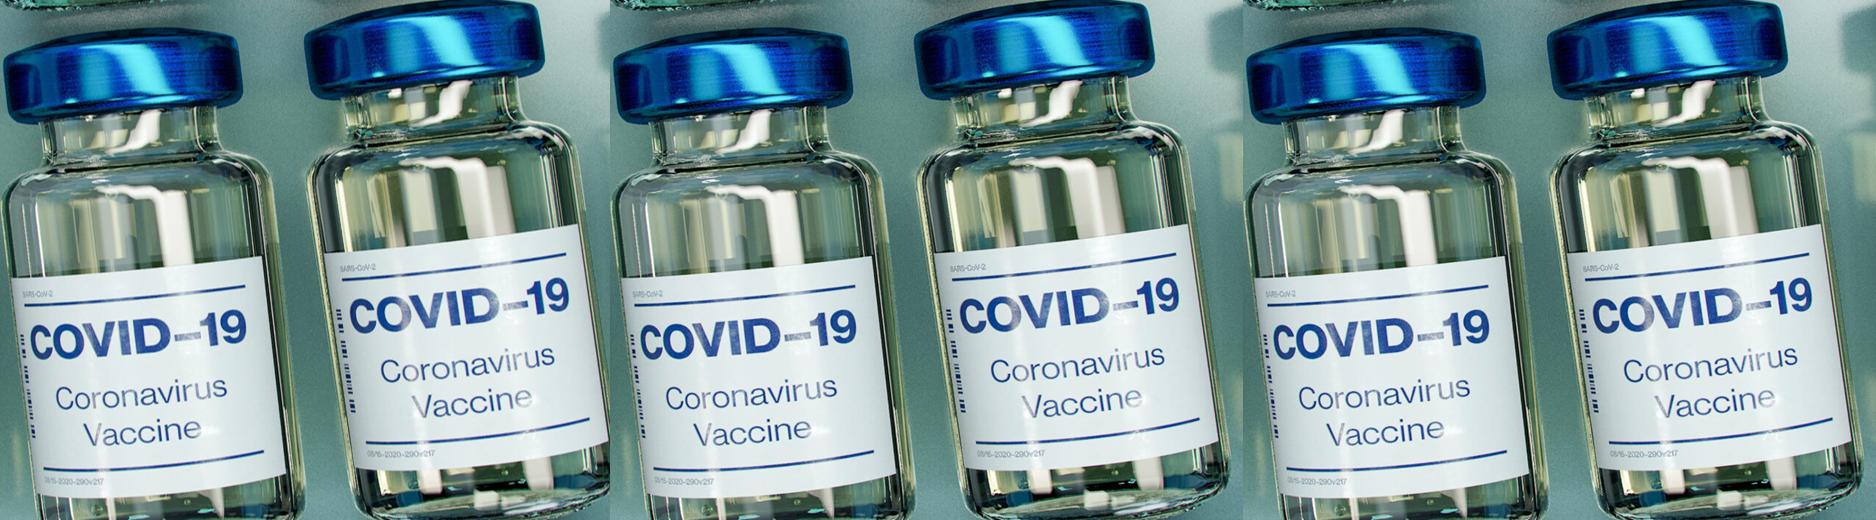 Covid-19 vaccine update